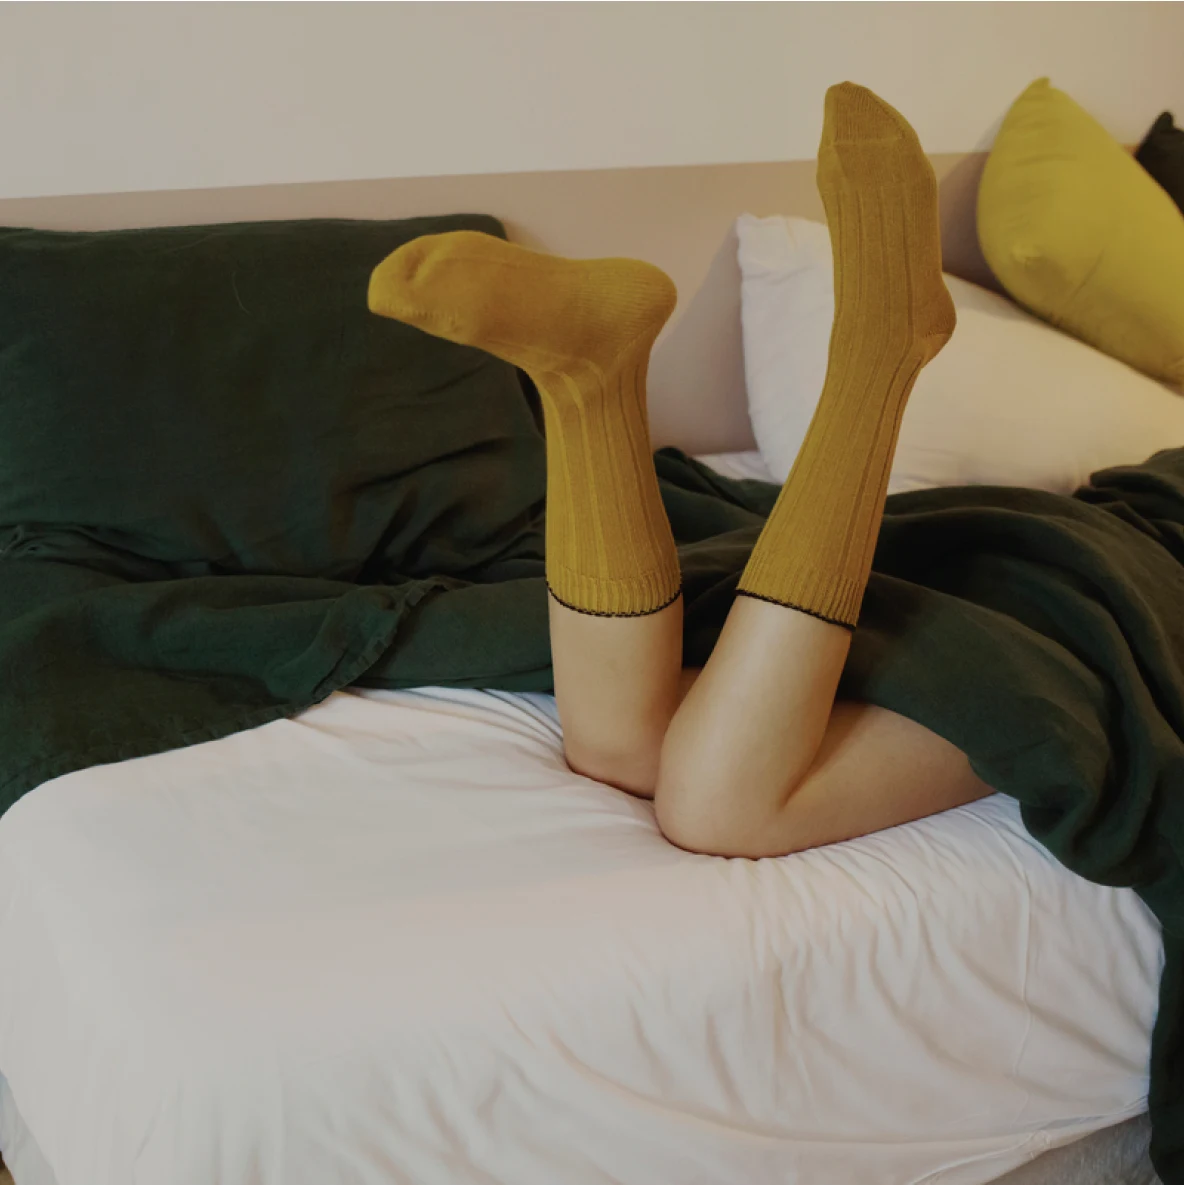 Eine Aufnahme von Frauenbeinen auf einem Bett mit senfgelben Socken; auf dem Bett liegen diverse Kissen und die Frau liegt unter einer grünen Decke